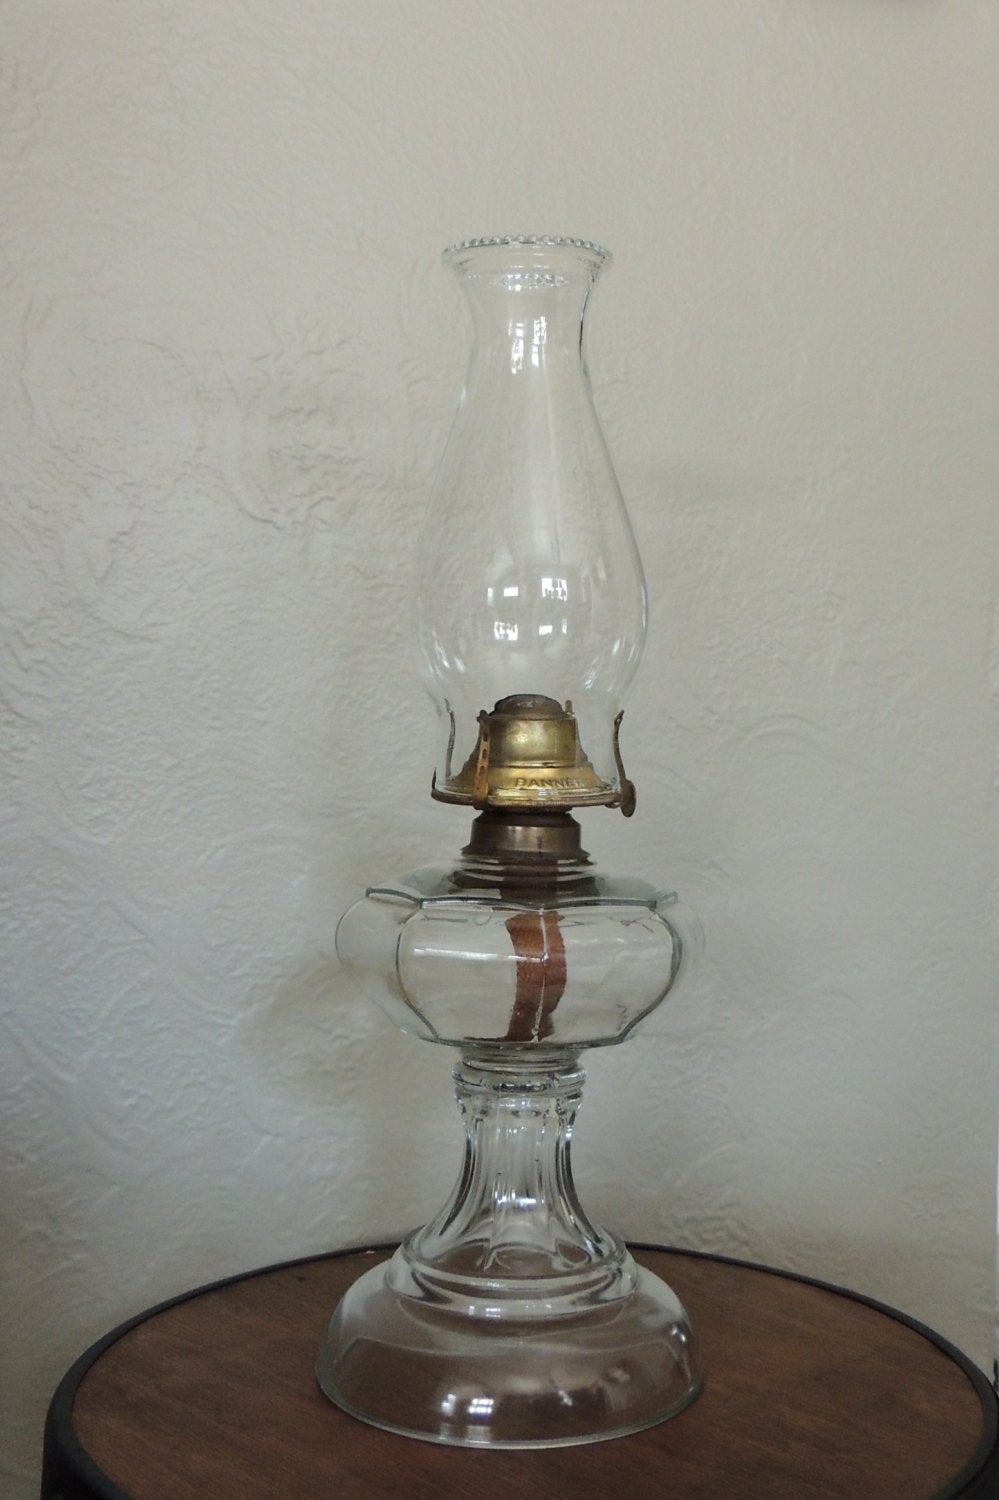 Details about   8-1/2" CLEAR TINTED GLASS CHIMNEYS HURRICANE LAMP GLOBE SHADE KEROSENE OIL LIGHT 